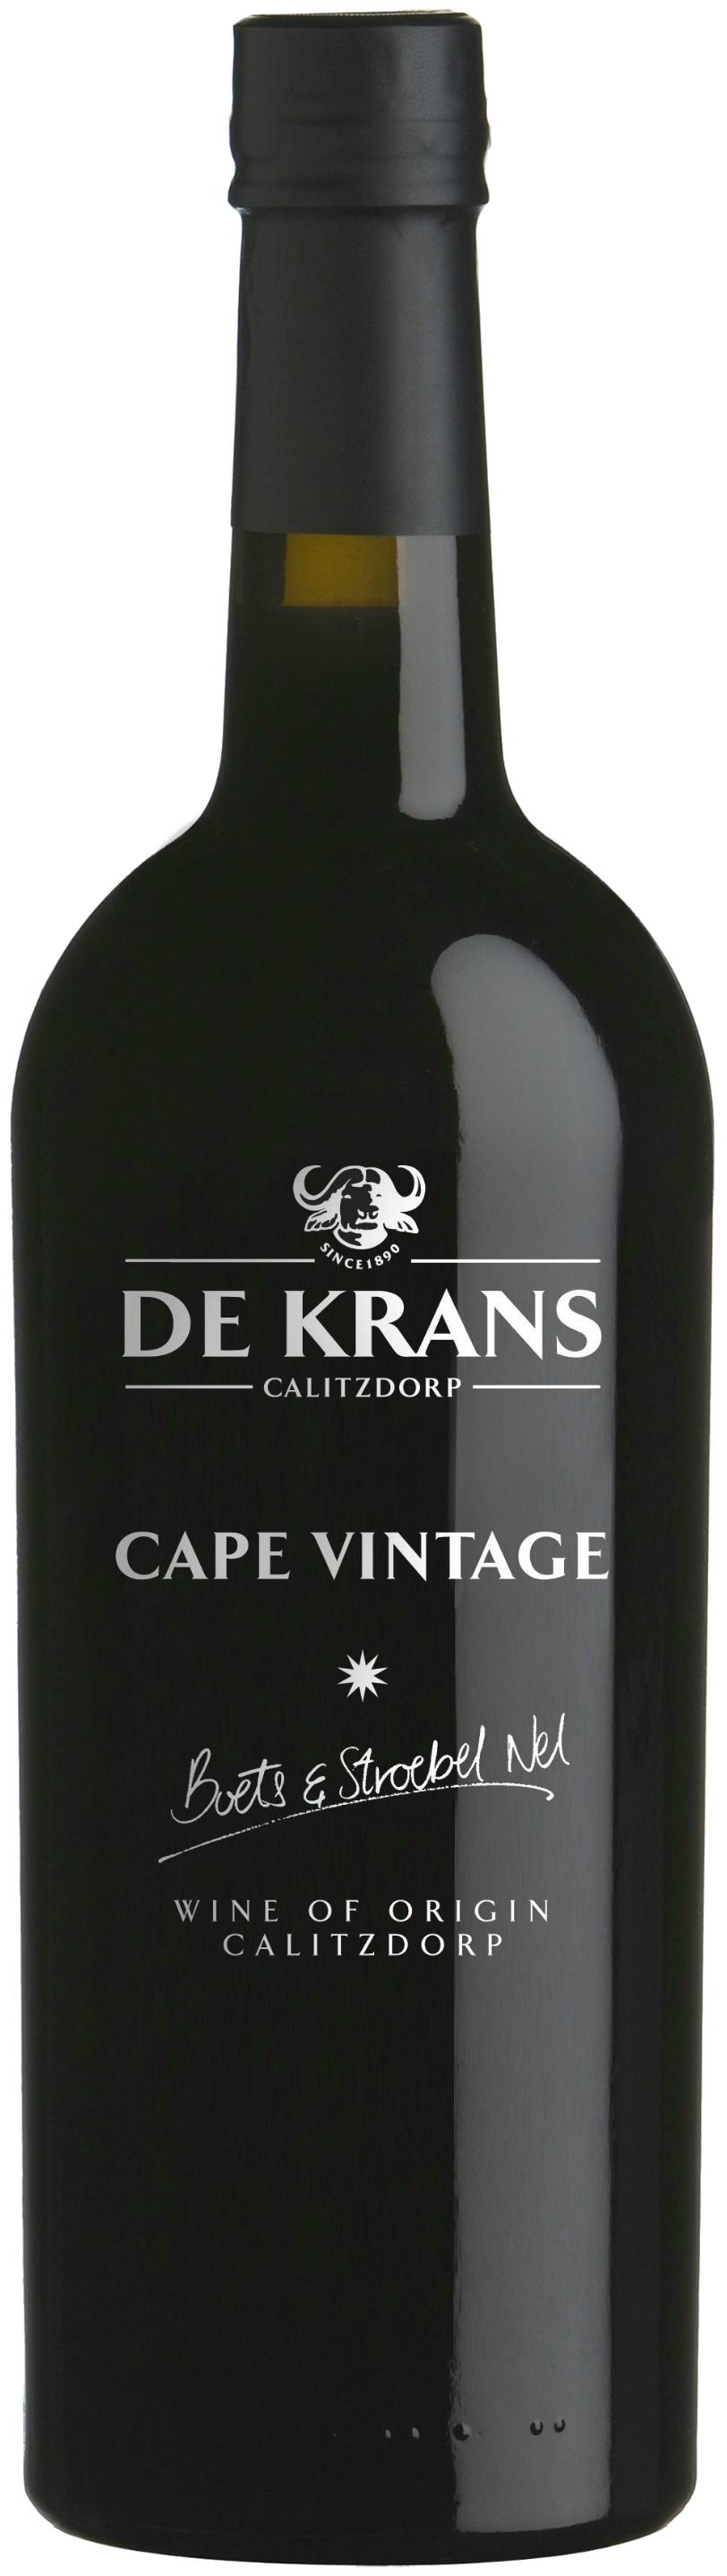 De Krans Cape Vintage 2019